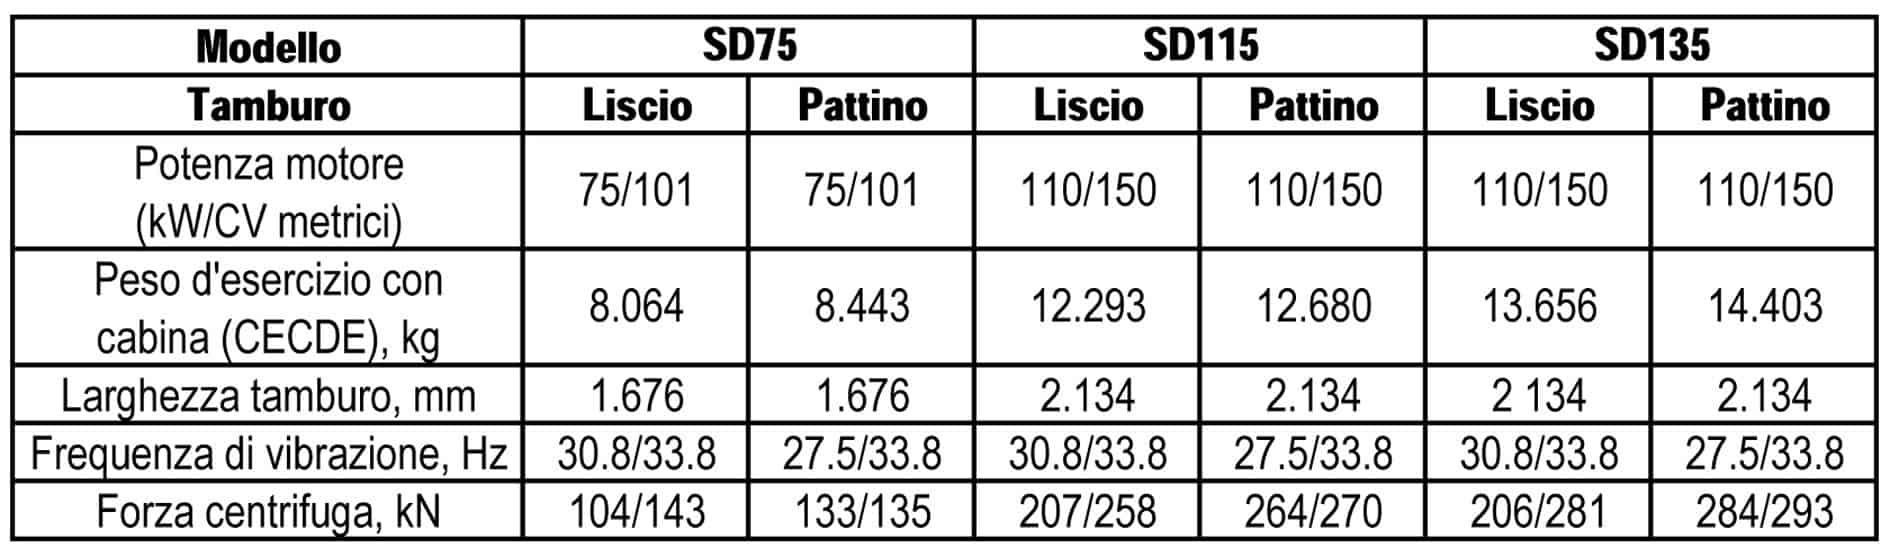 Le prestazioni dei rulli per terreno a tamburo singolo SD75, SD115 e SD135 in pillole